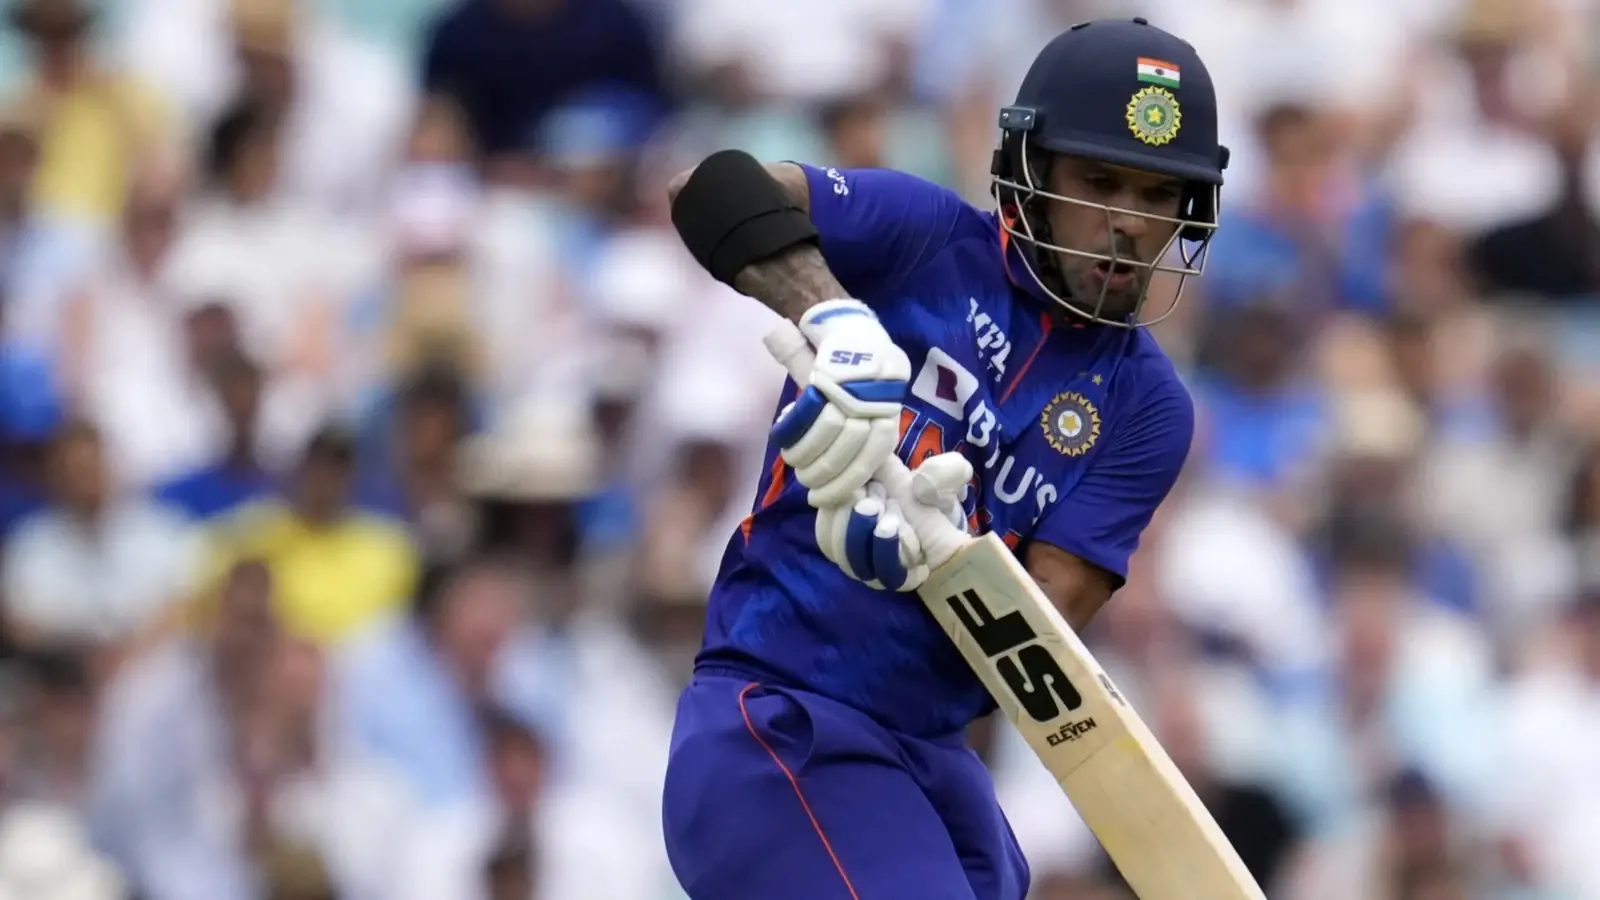  भारत ने वेस्टइंडीज के खिलाफ दो विश्व रिकॉर्ड के साथ एकदिवसीय श्रृंखला शुरू की |  क्रिकेट
